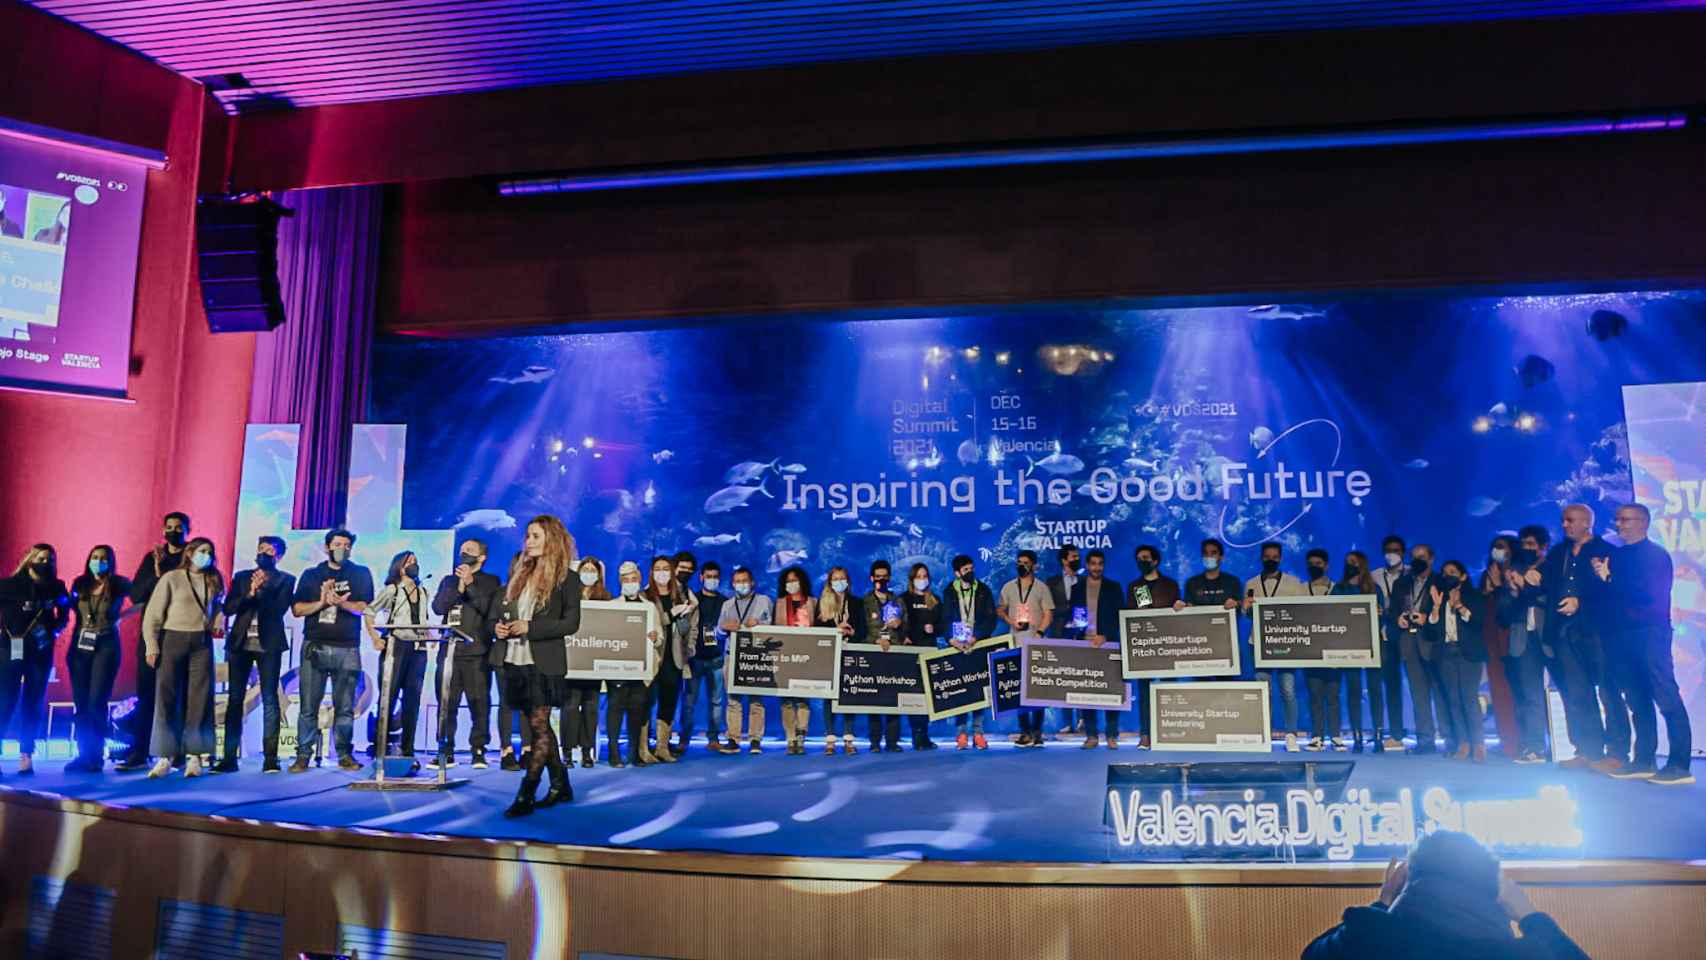 Entrega de premios del evento Valencia Digital Summit 2021, celebrado en el Oceanogràfic de Valencia.